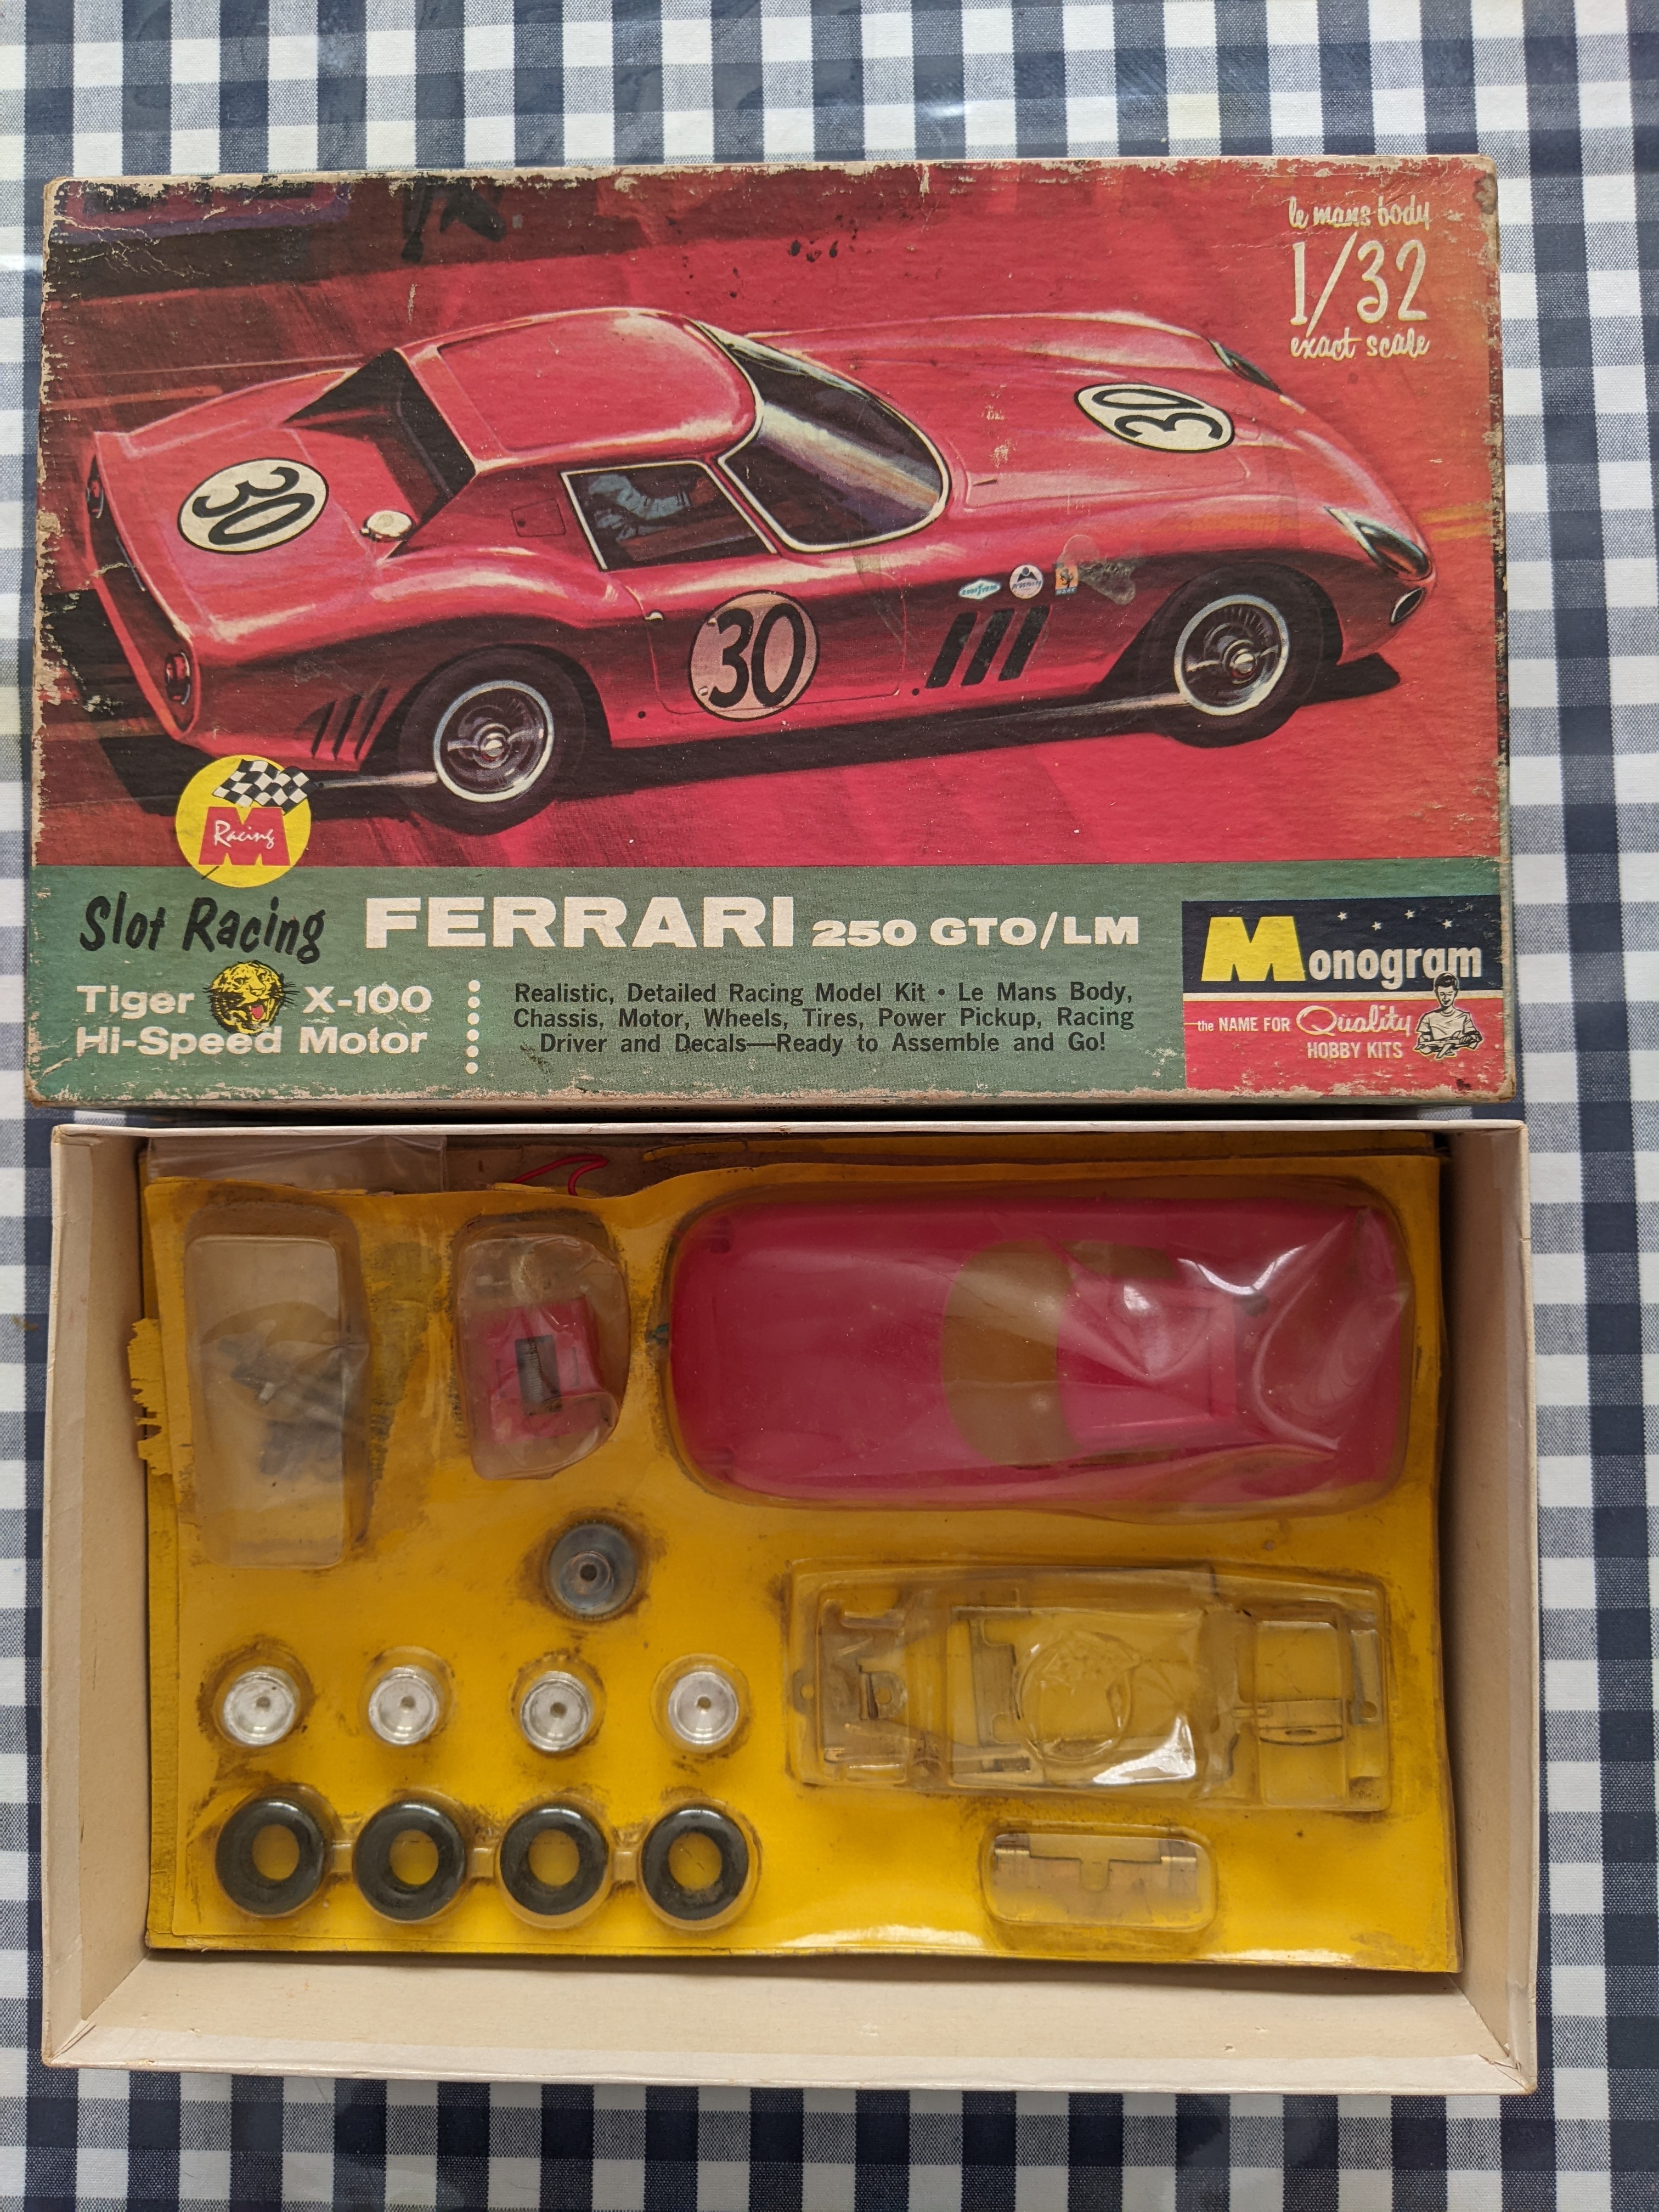 1964 Ferrari 250 GTO LM - First series - Kit MIB